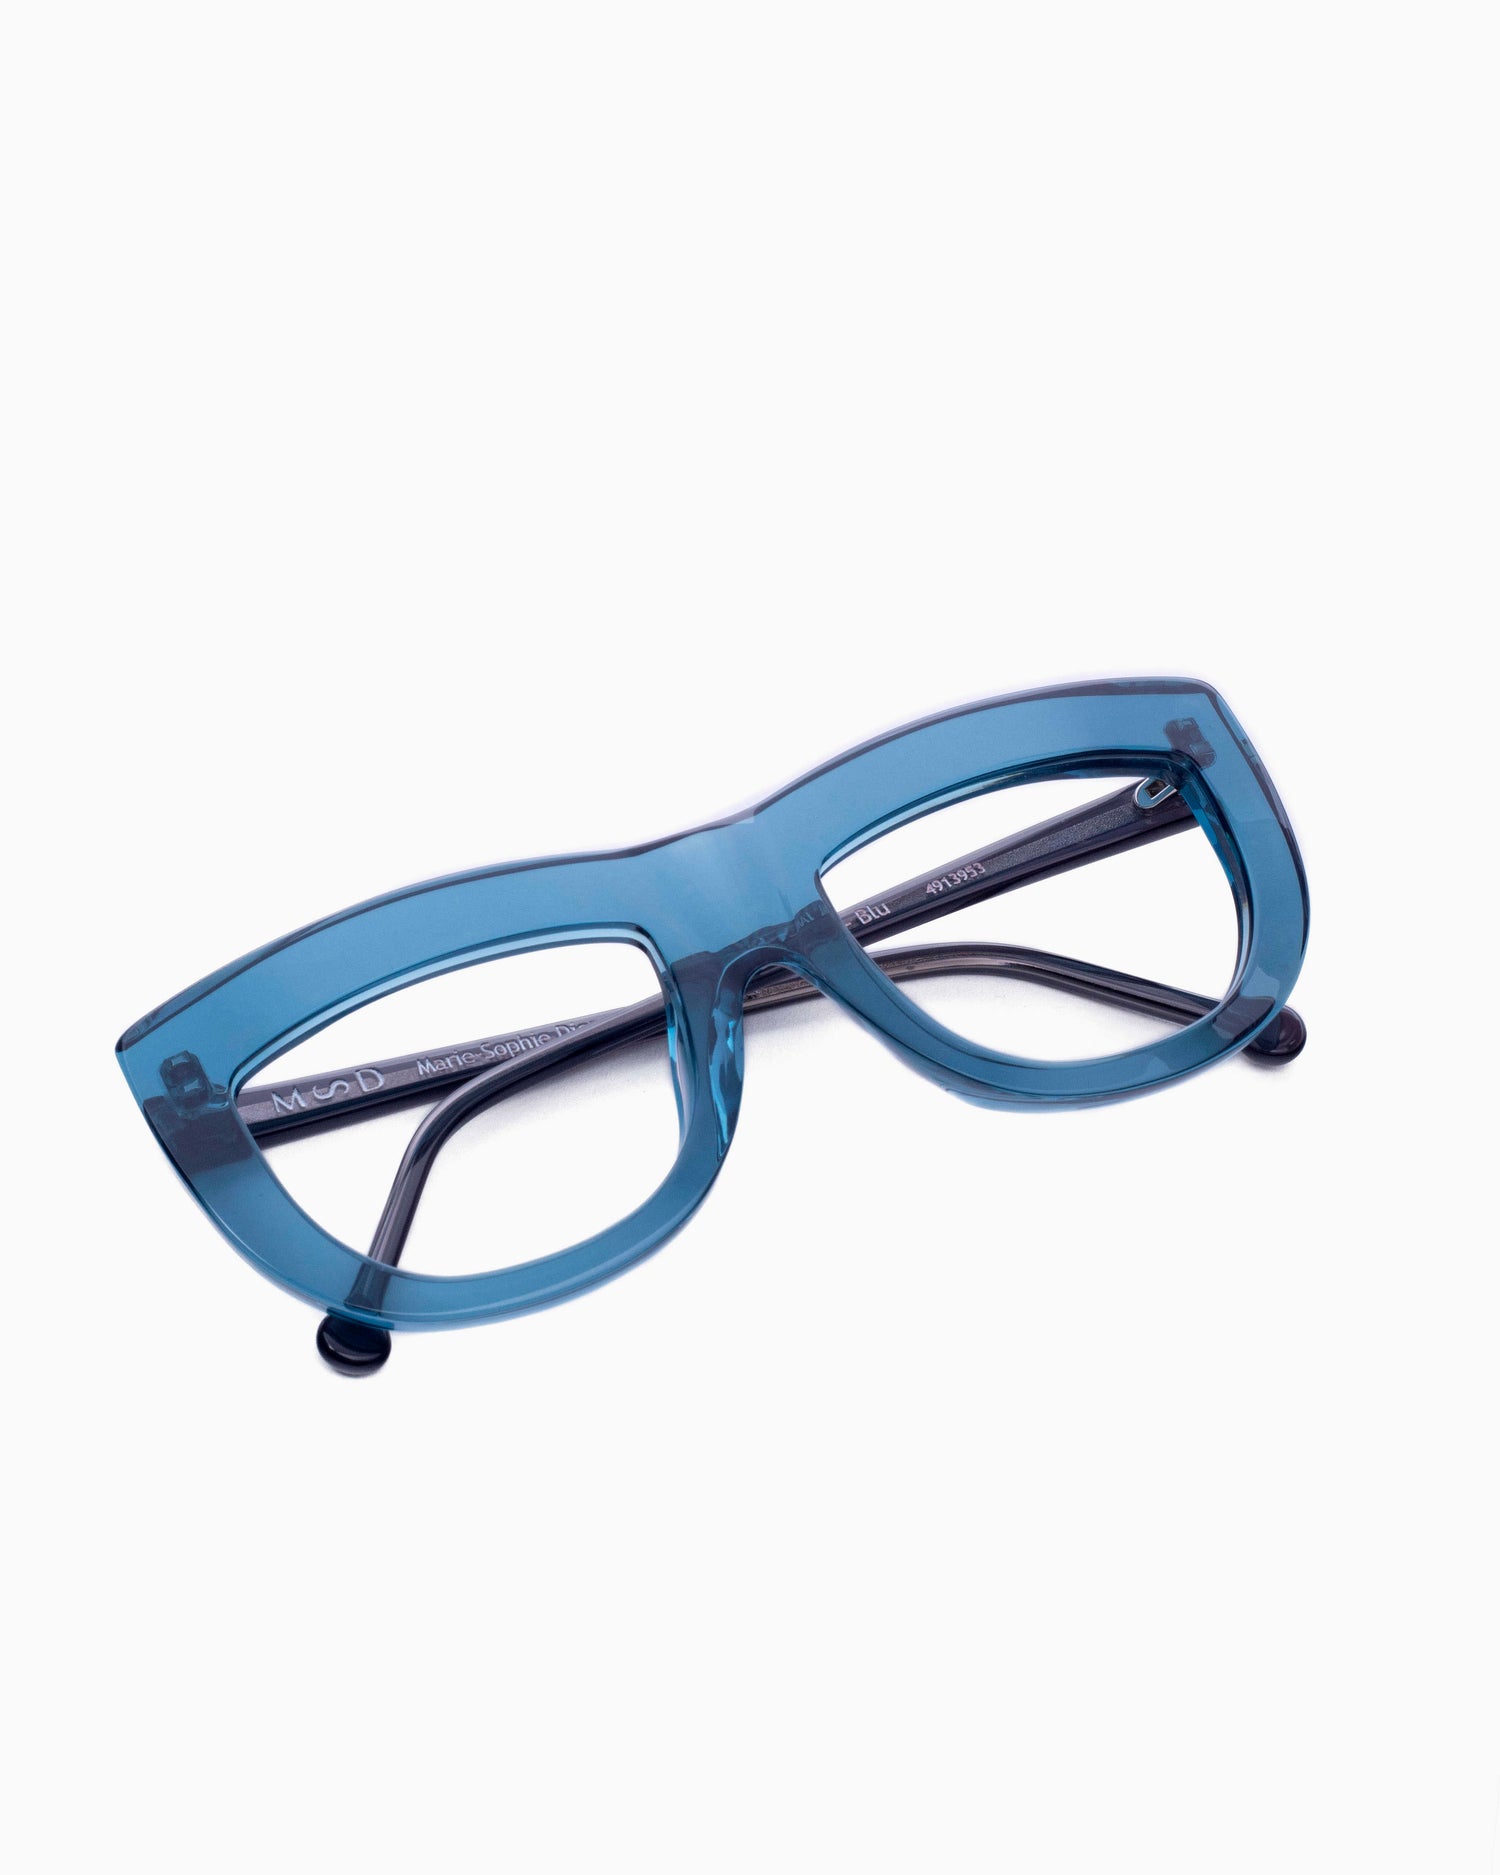 Marie-Sophie Dion - Germain - Blu | glasses bar:  Marie-Sophie Dion